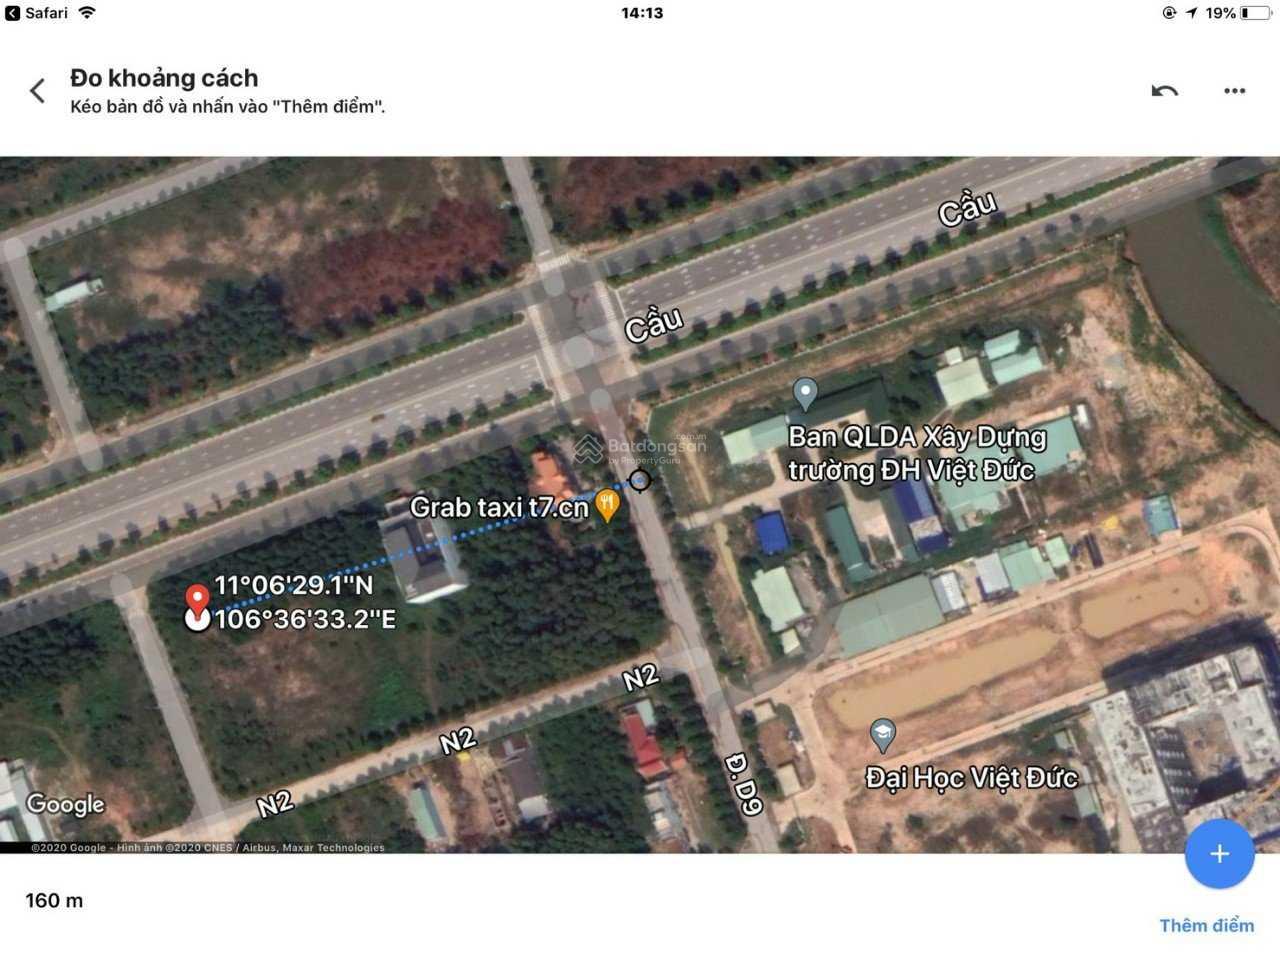 Đất góc gần trường đại học quốc tế Việt Đức cho thuê và kinh doanh được ngay - Gọi: 0979 791 478 - Ảnh 1